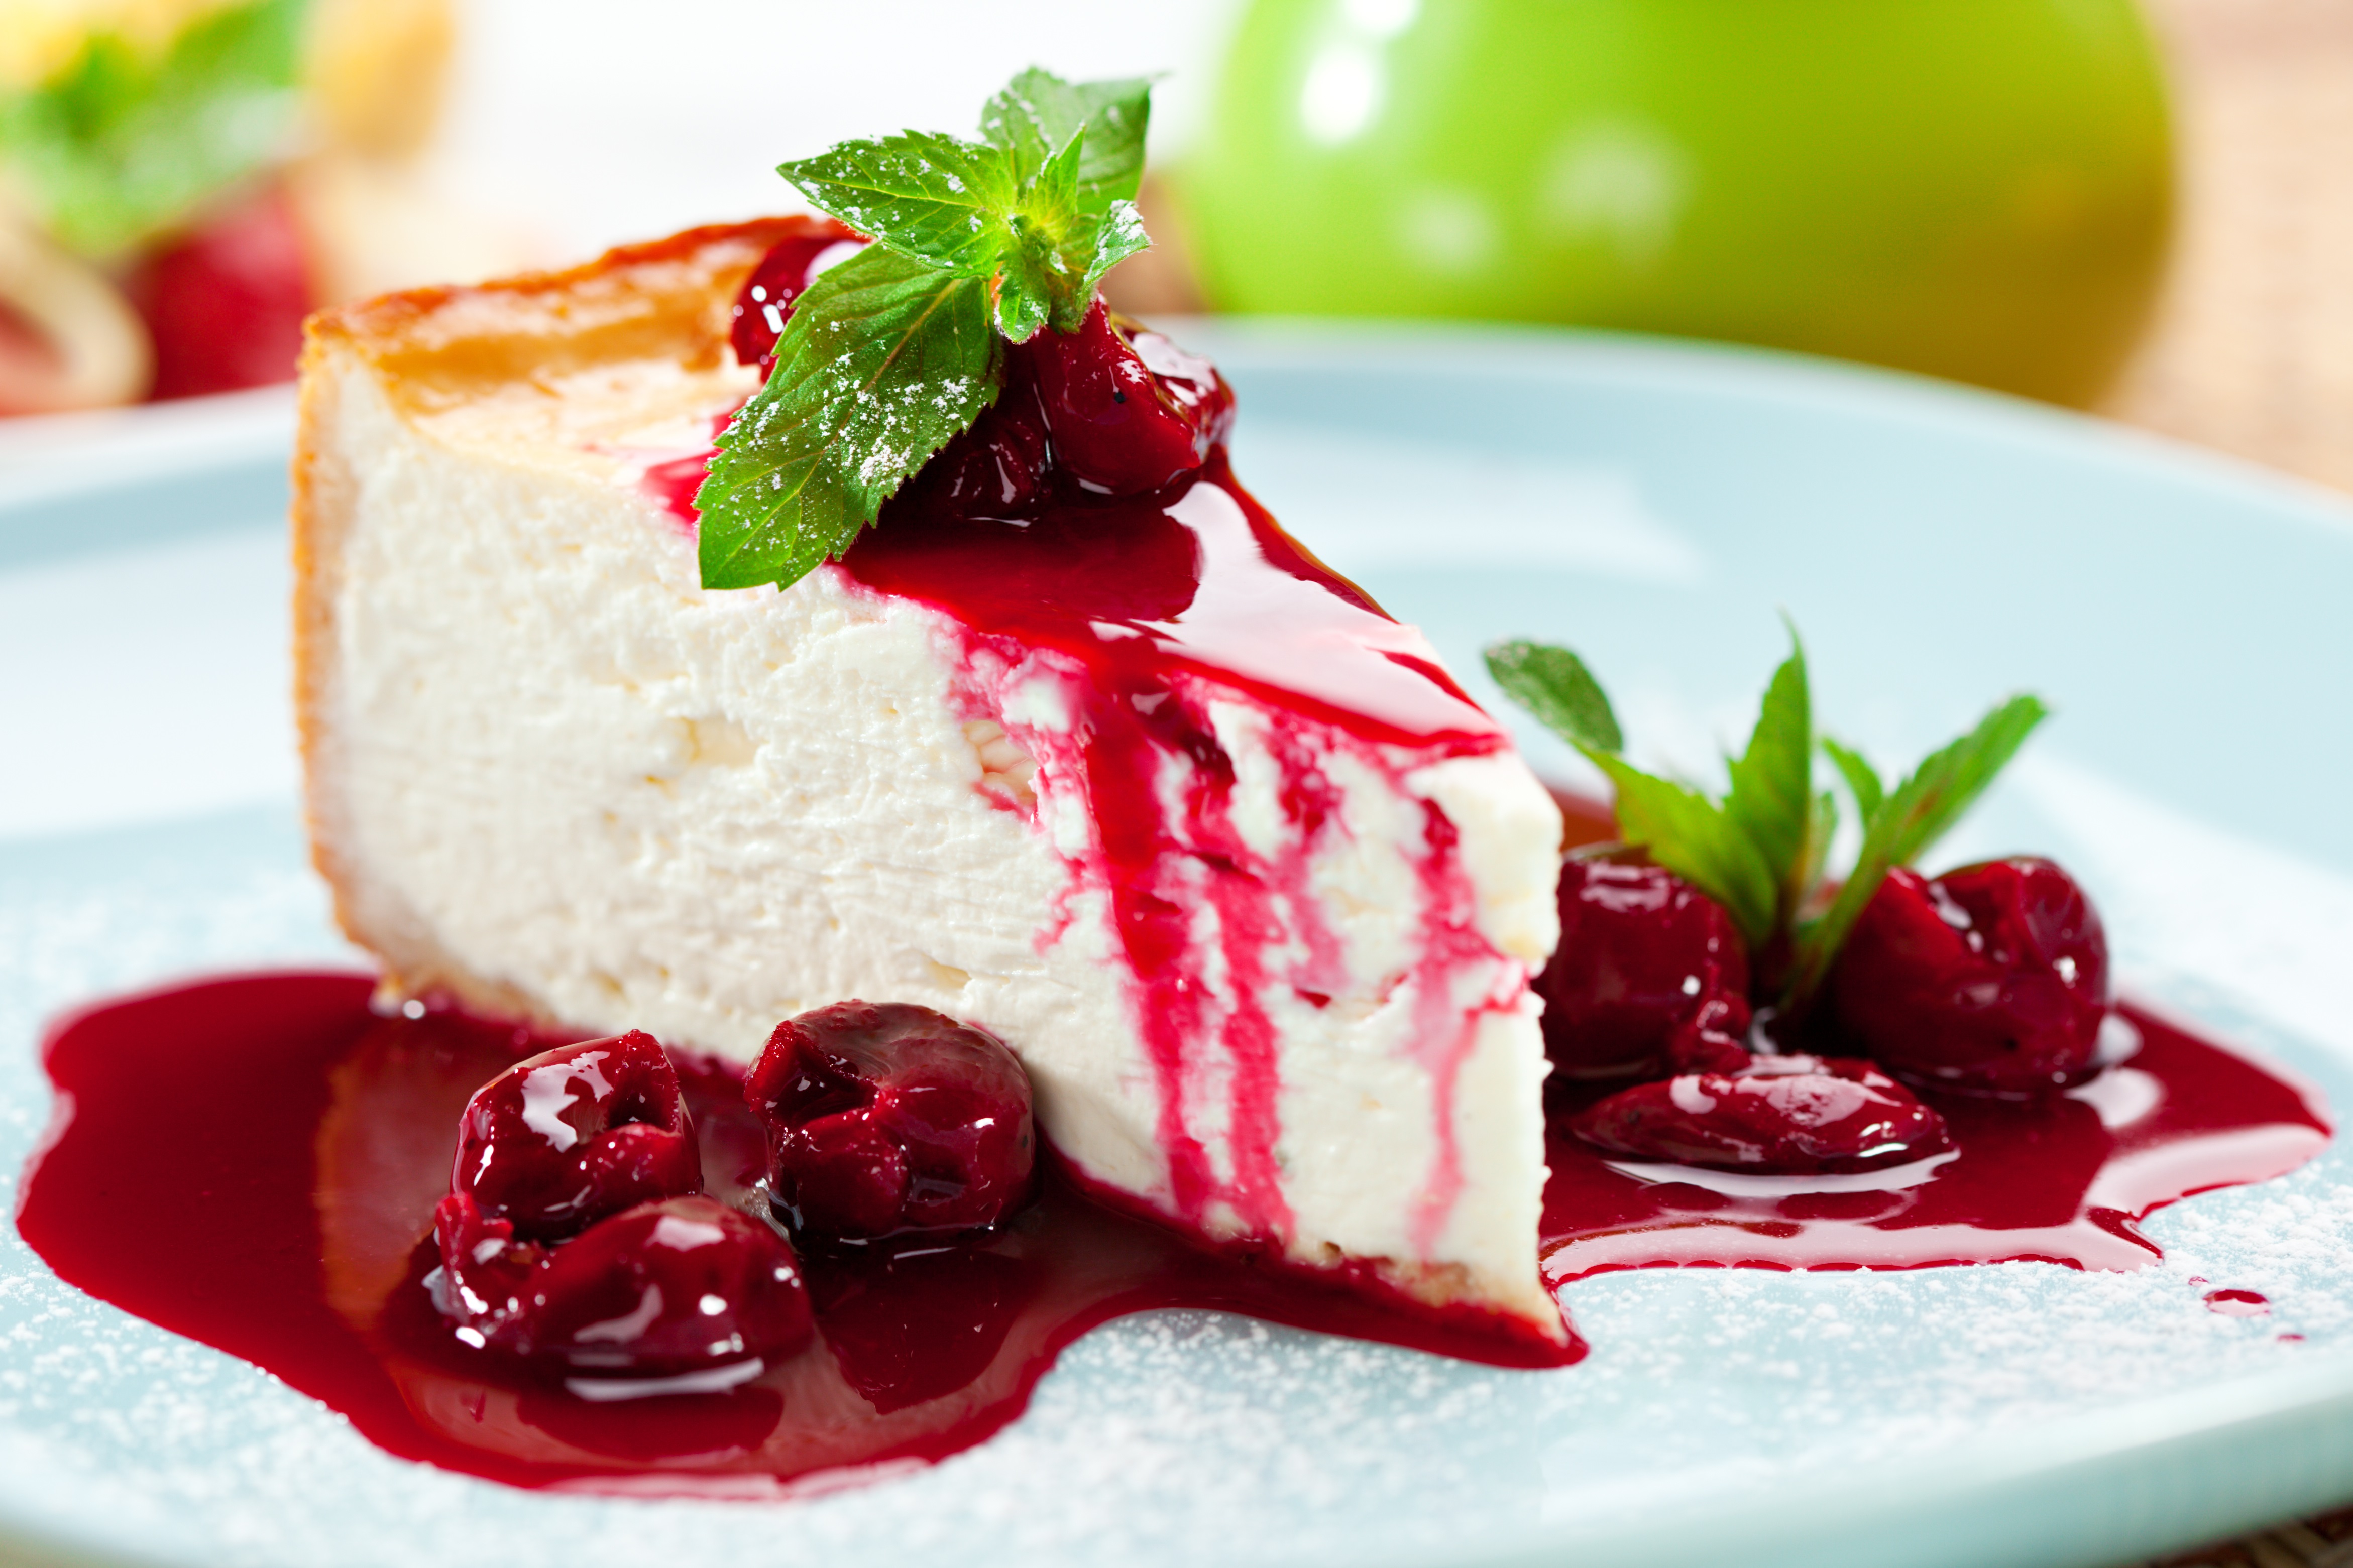 Ήρθε η ώρα να το μάθεις… Το cheesecake ήταν δημοφιλές γλυκό των αρχαίων Ελλήνων! Αυτή είναι η ιστορία του